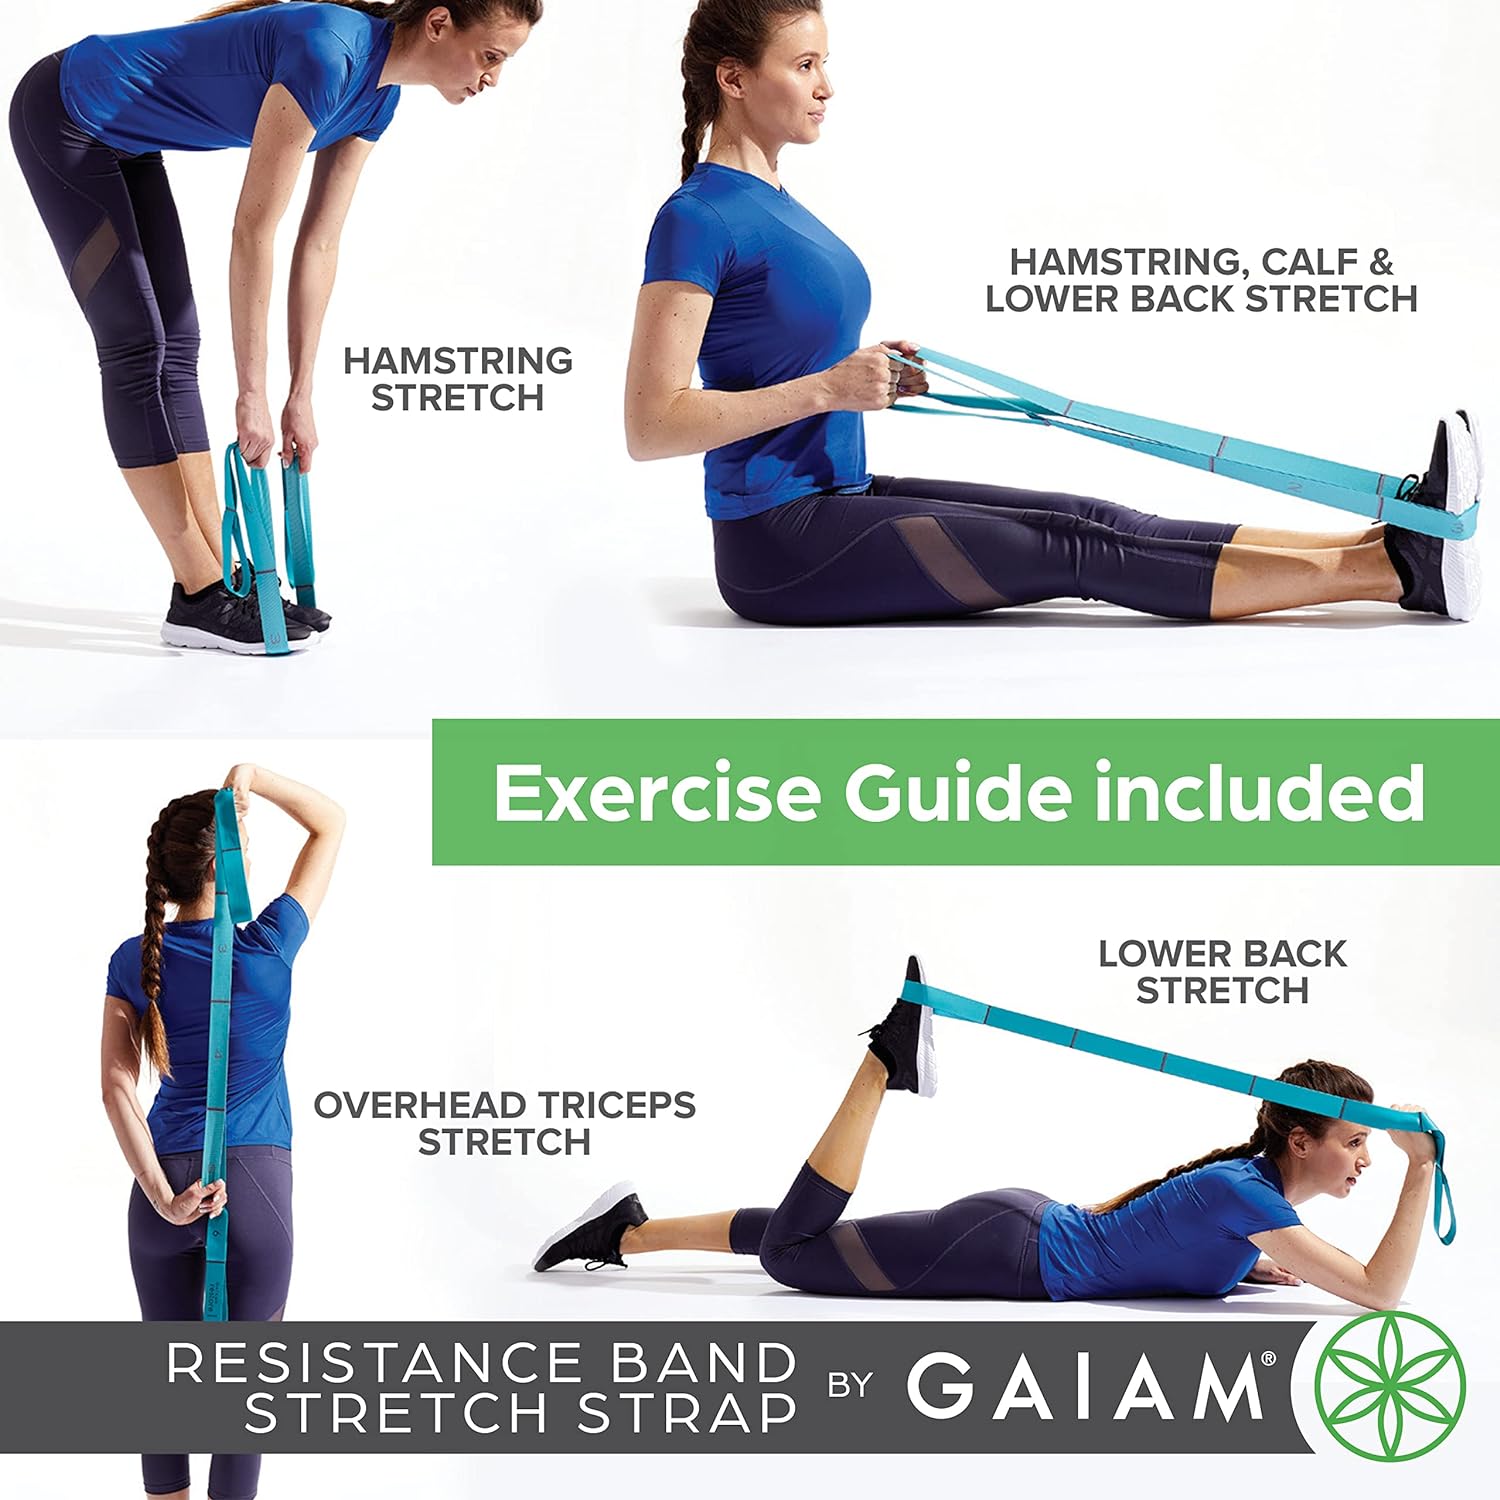 Gaiam Restore Correa elástica – Correa elástica con bucles para una resistencia media para ayudar al estiramiento en la pierna